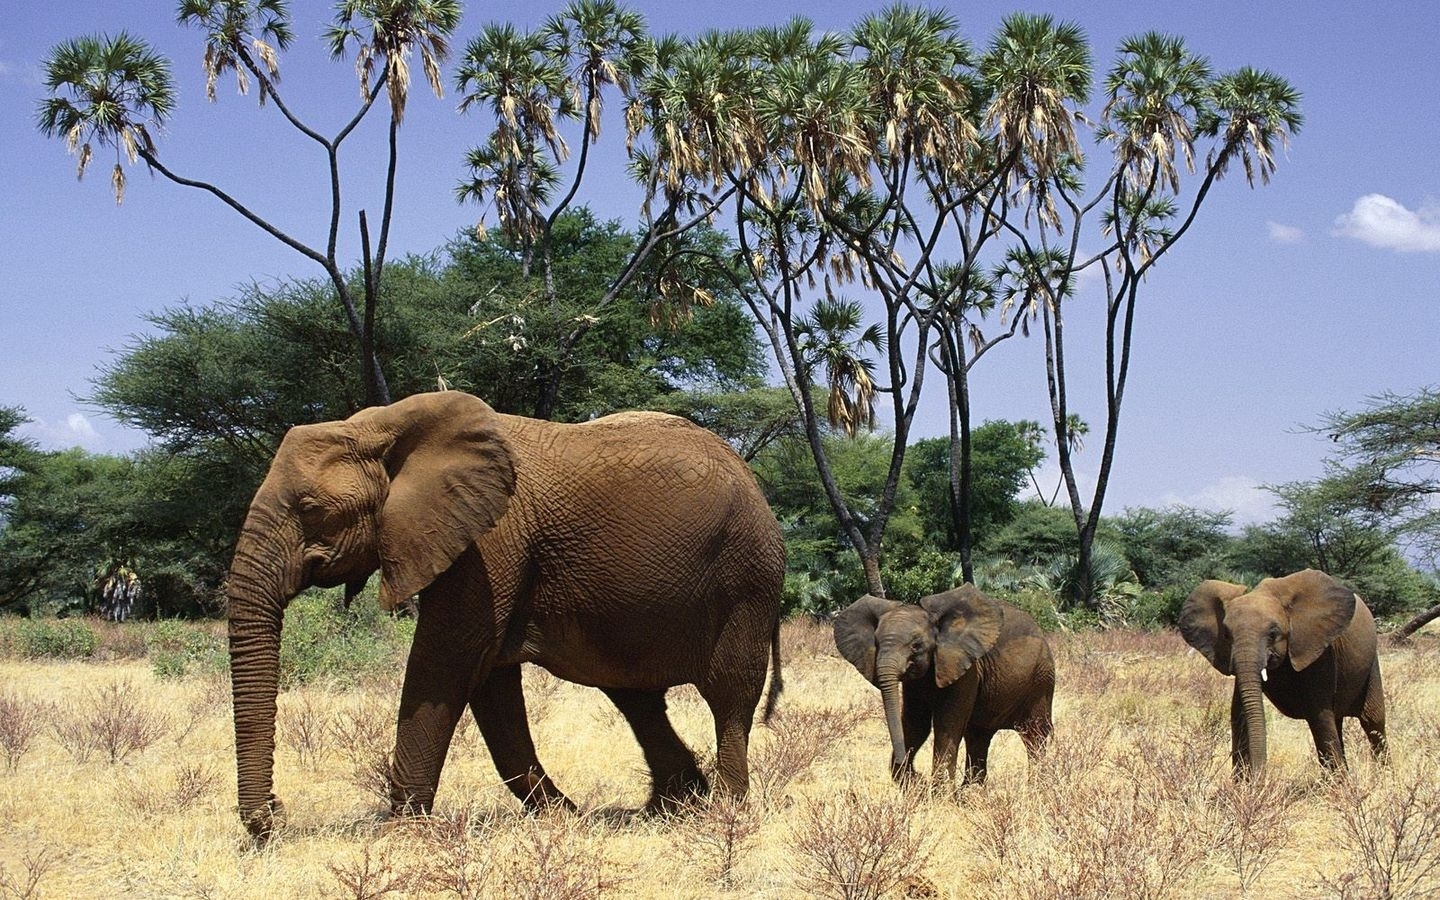 Скачать обои бесплатно Животные, Слоны картинка на рабочий стол ПК